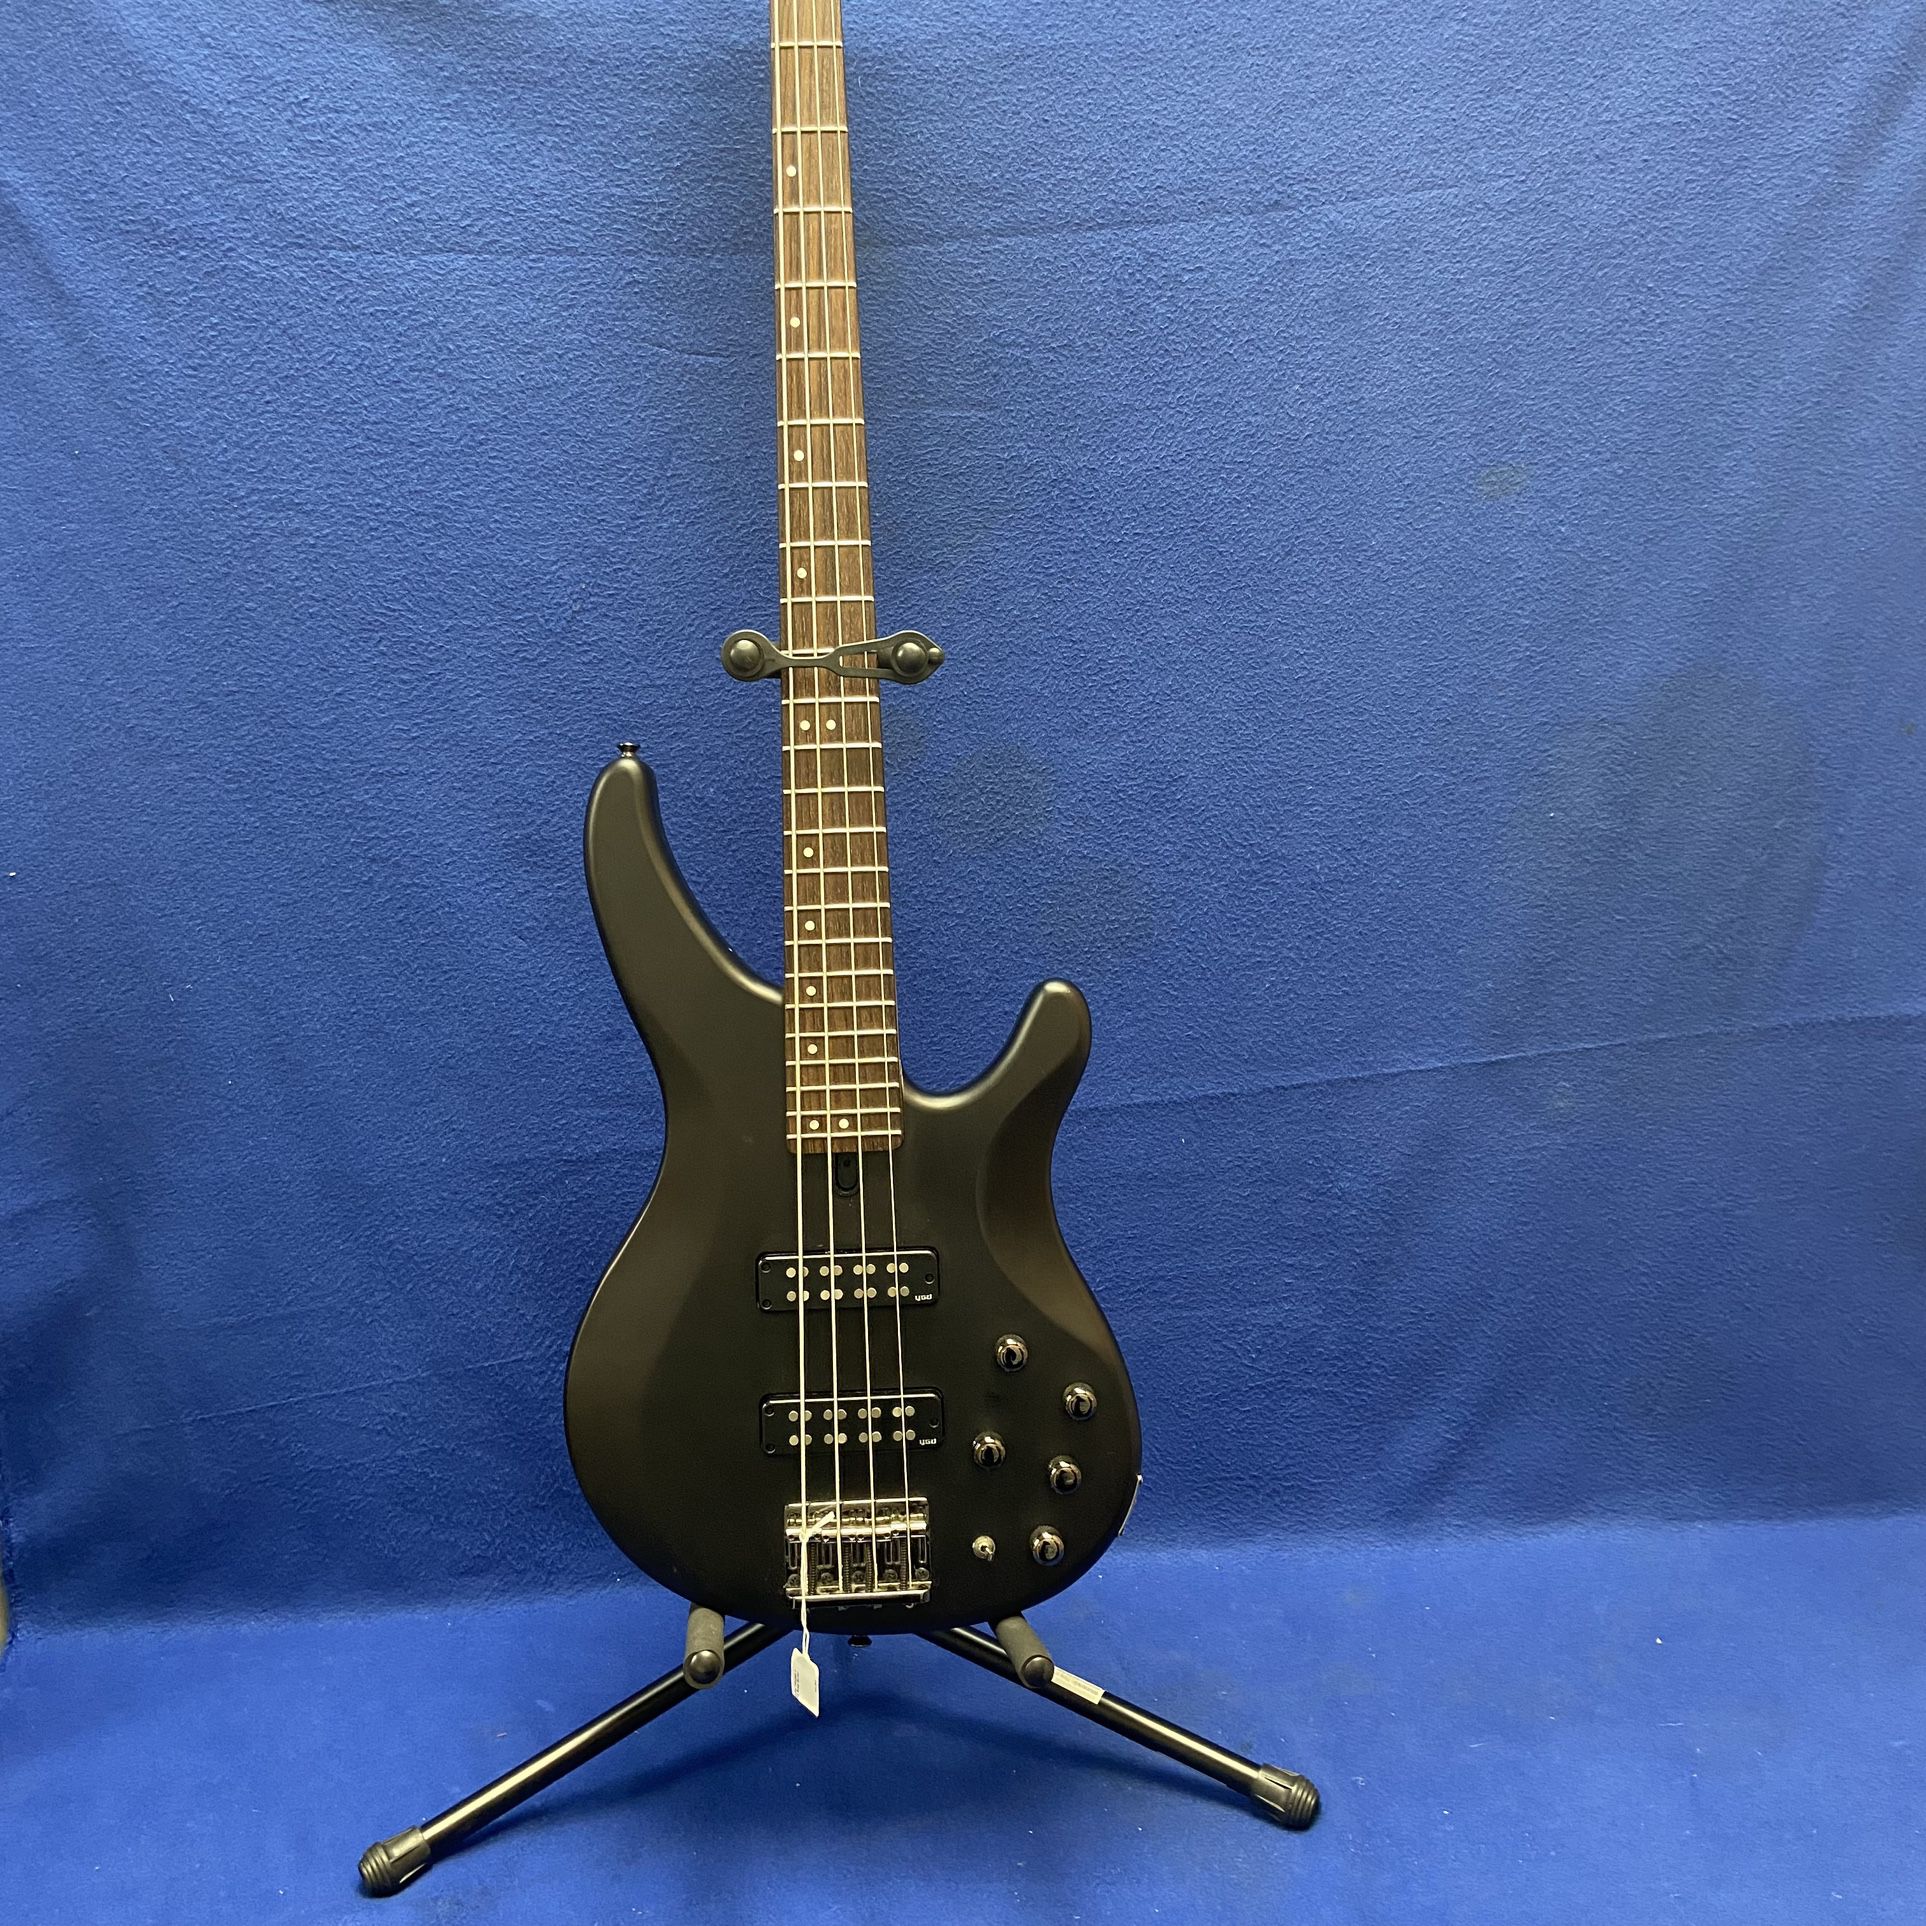 Yamaha Trbx504 4 String Bass Guitar 11046755